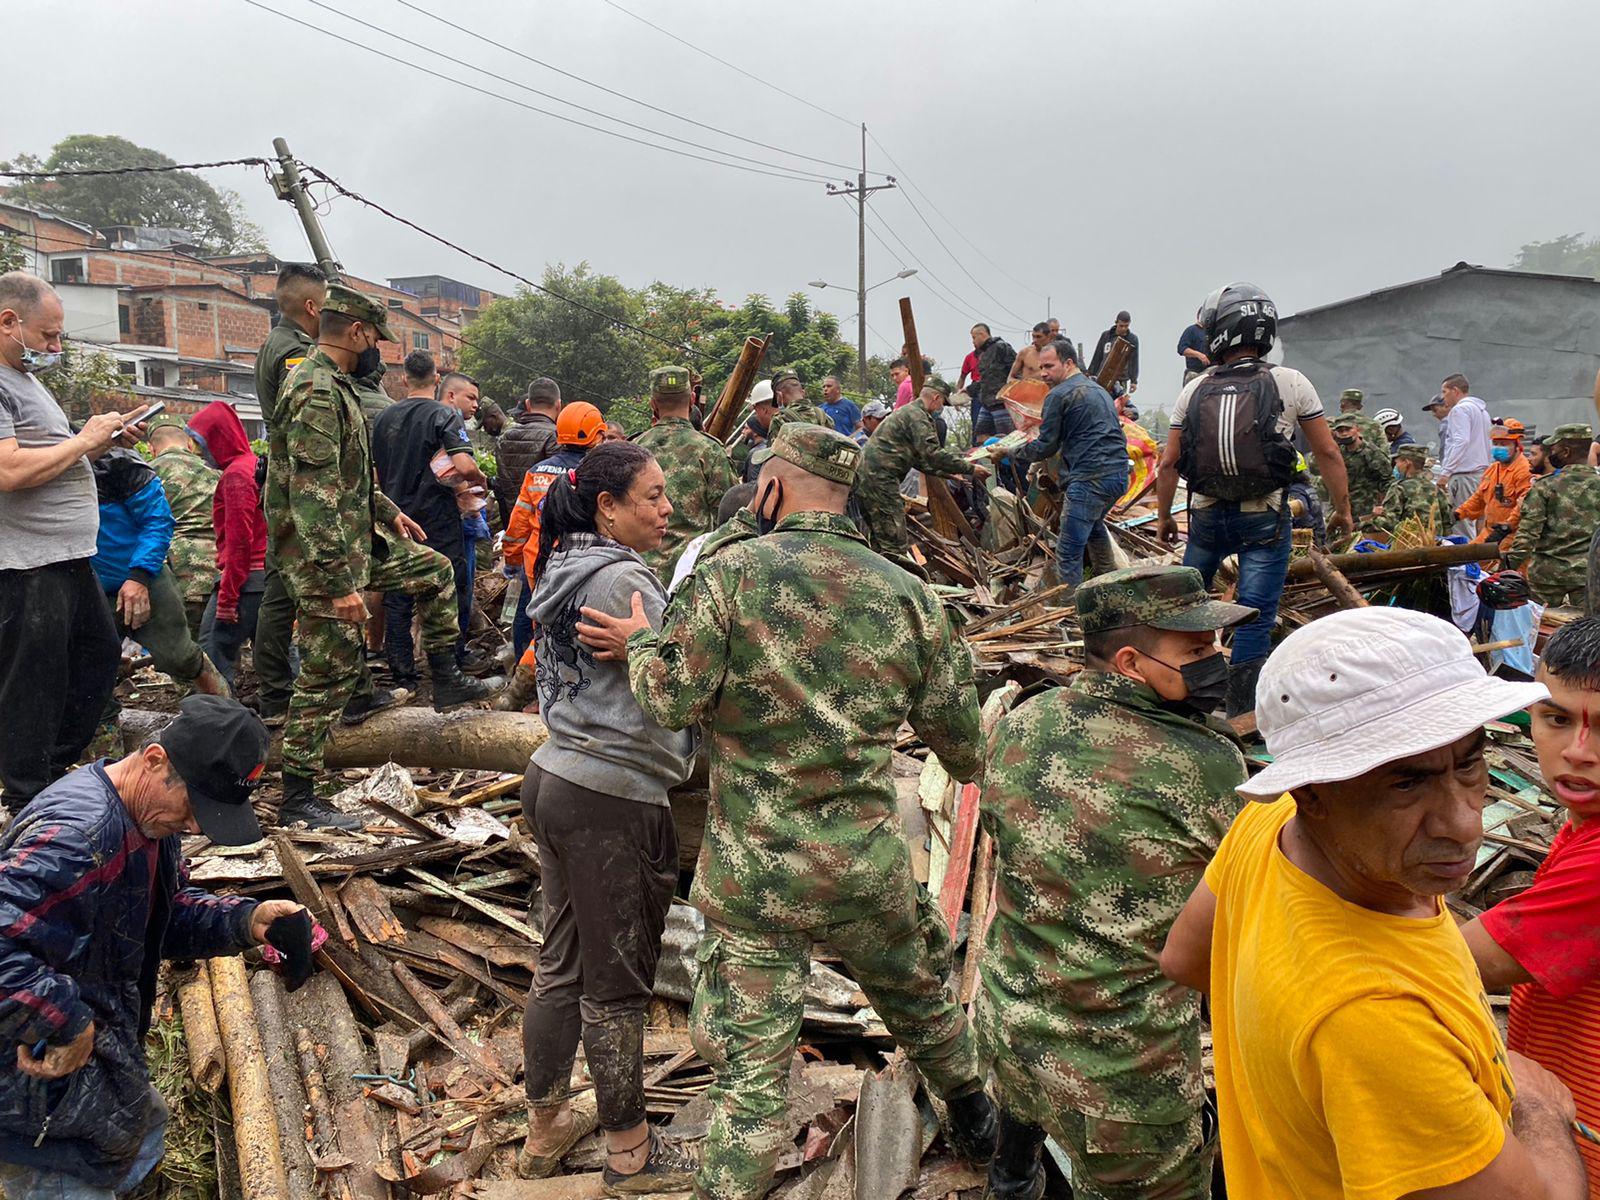 $!Deslizamiento de tierra en Colombia deja 14 muertos y 35 heridos